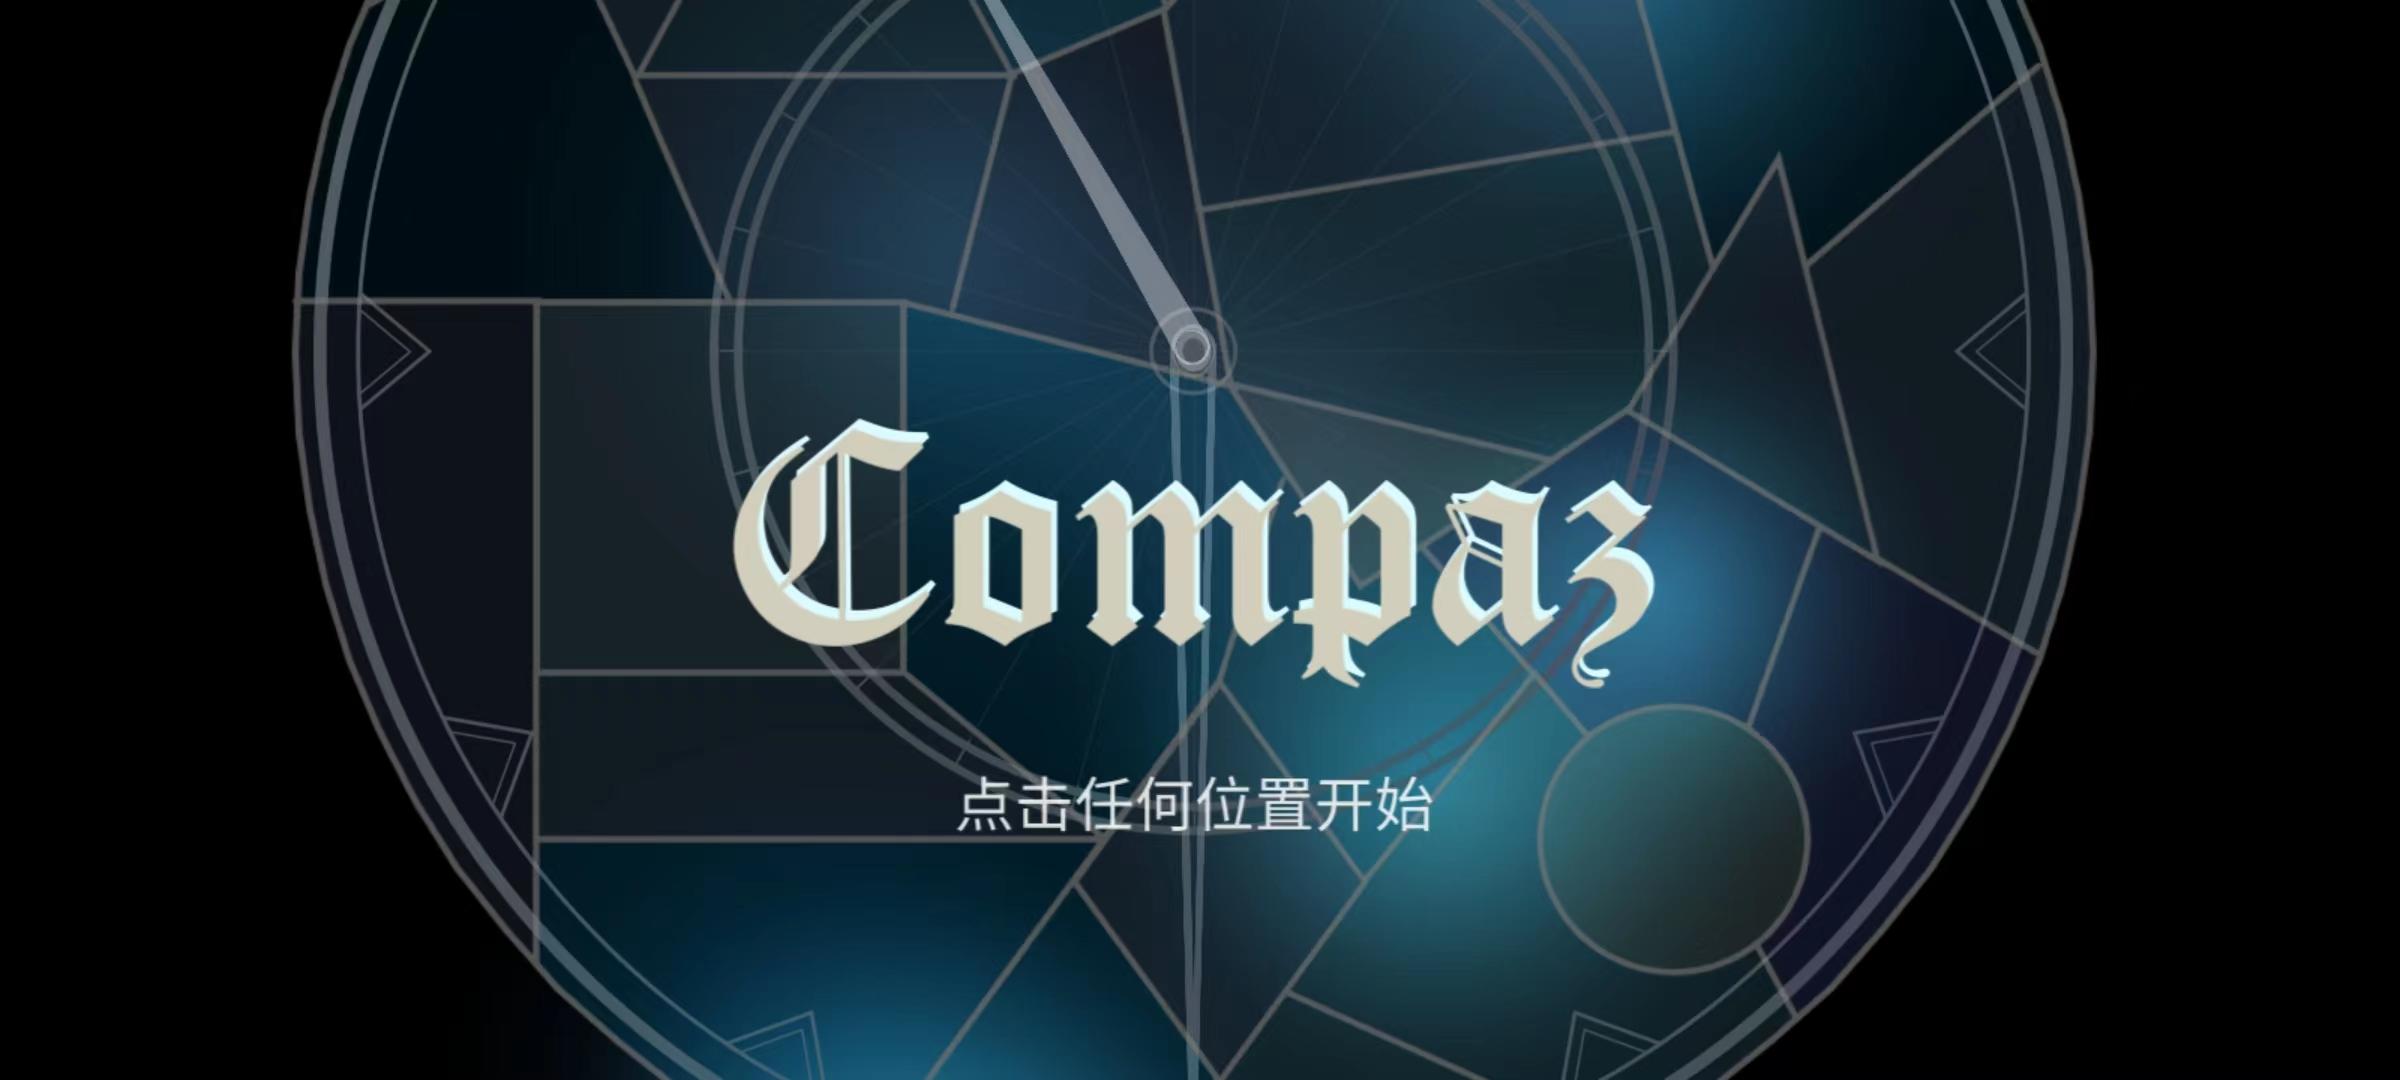 Screenshot of Compaz